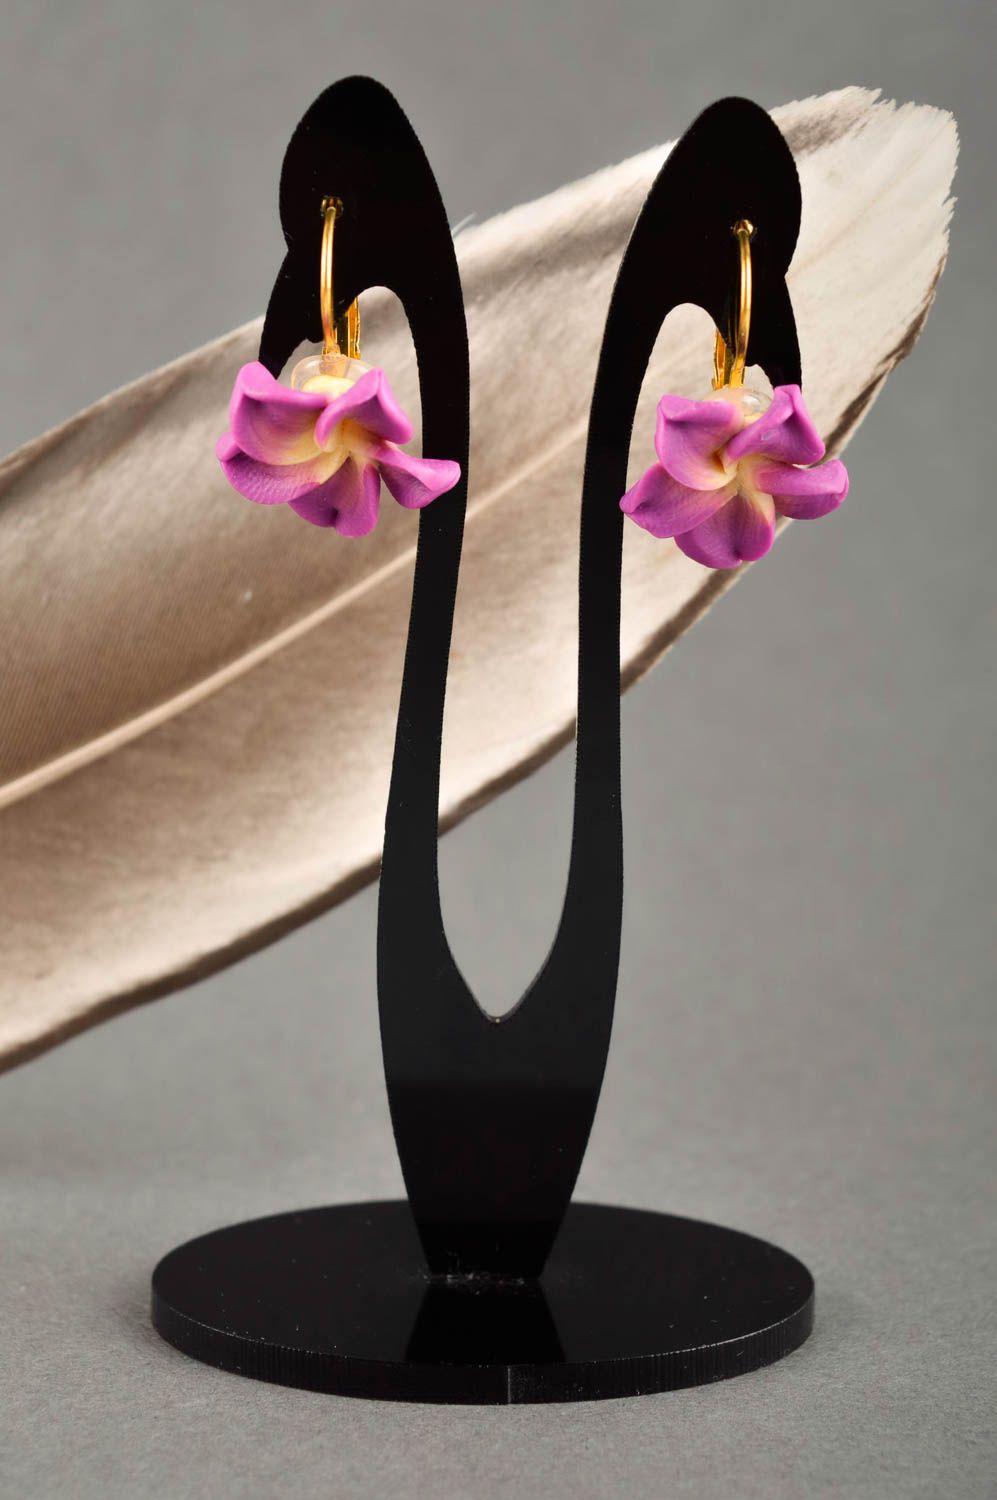 Элитная бижутерия украшение ручной работы серьги из полимерной глины цветы фото 1